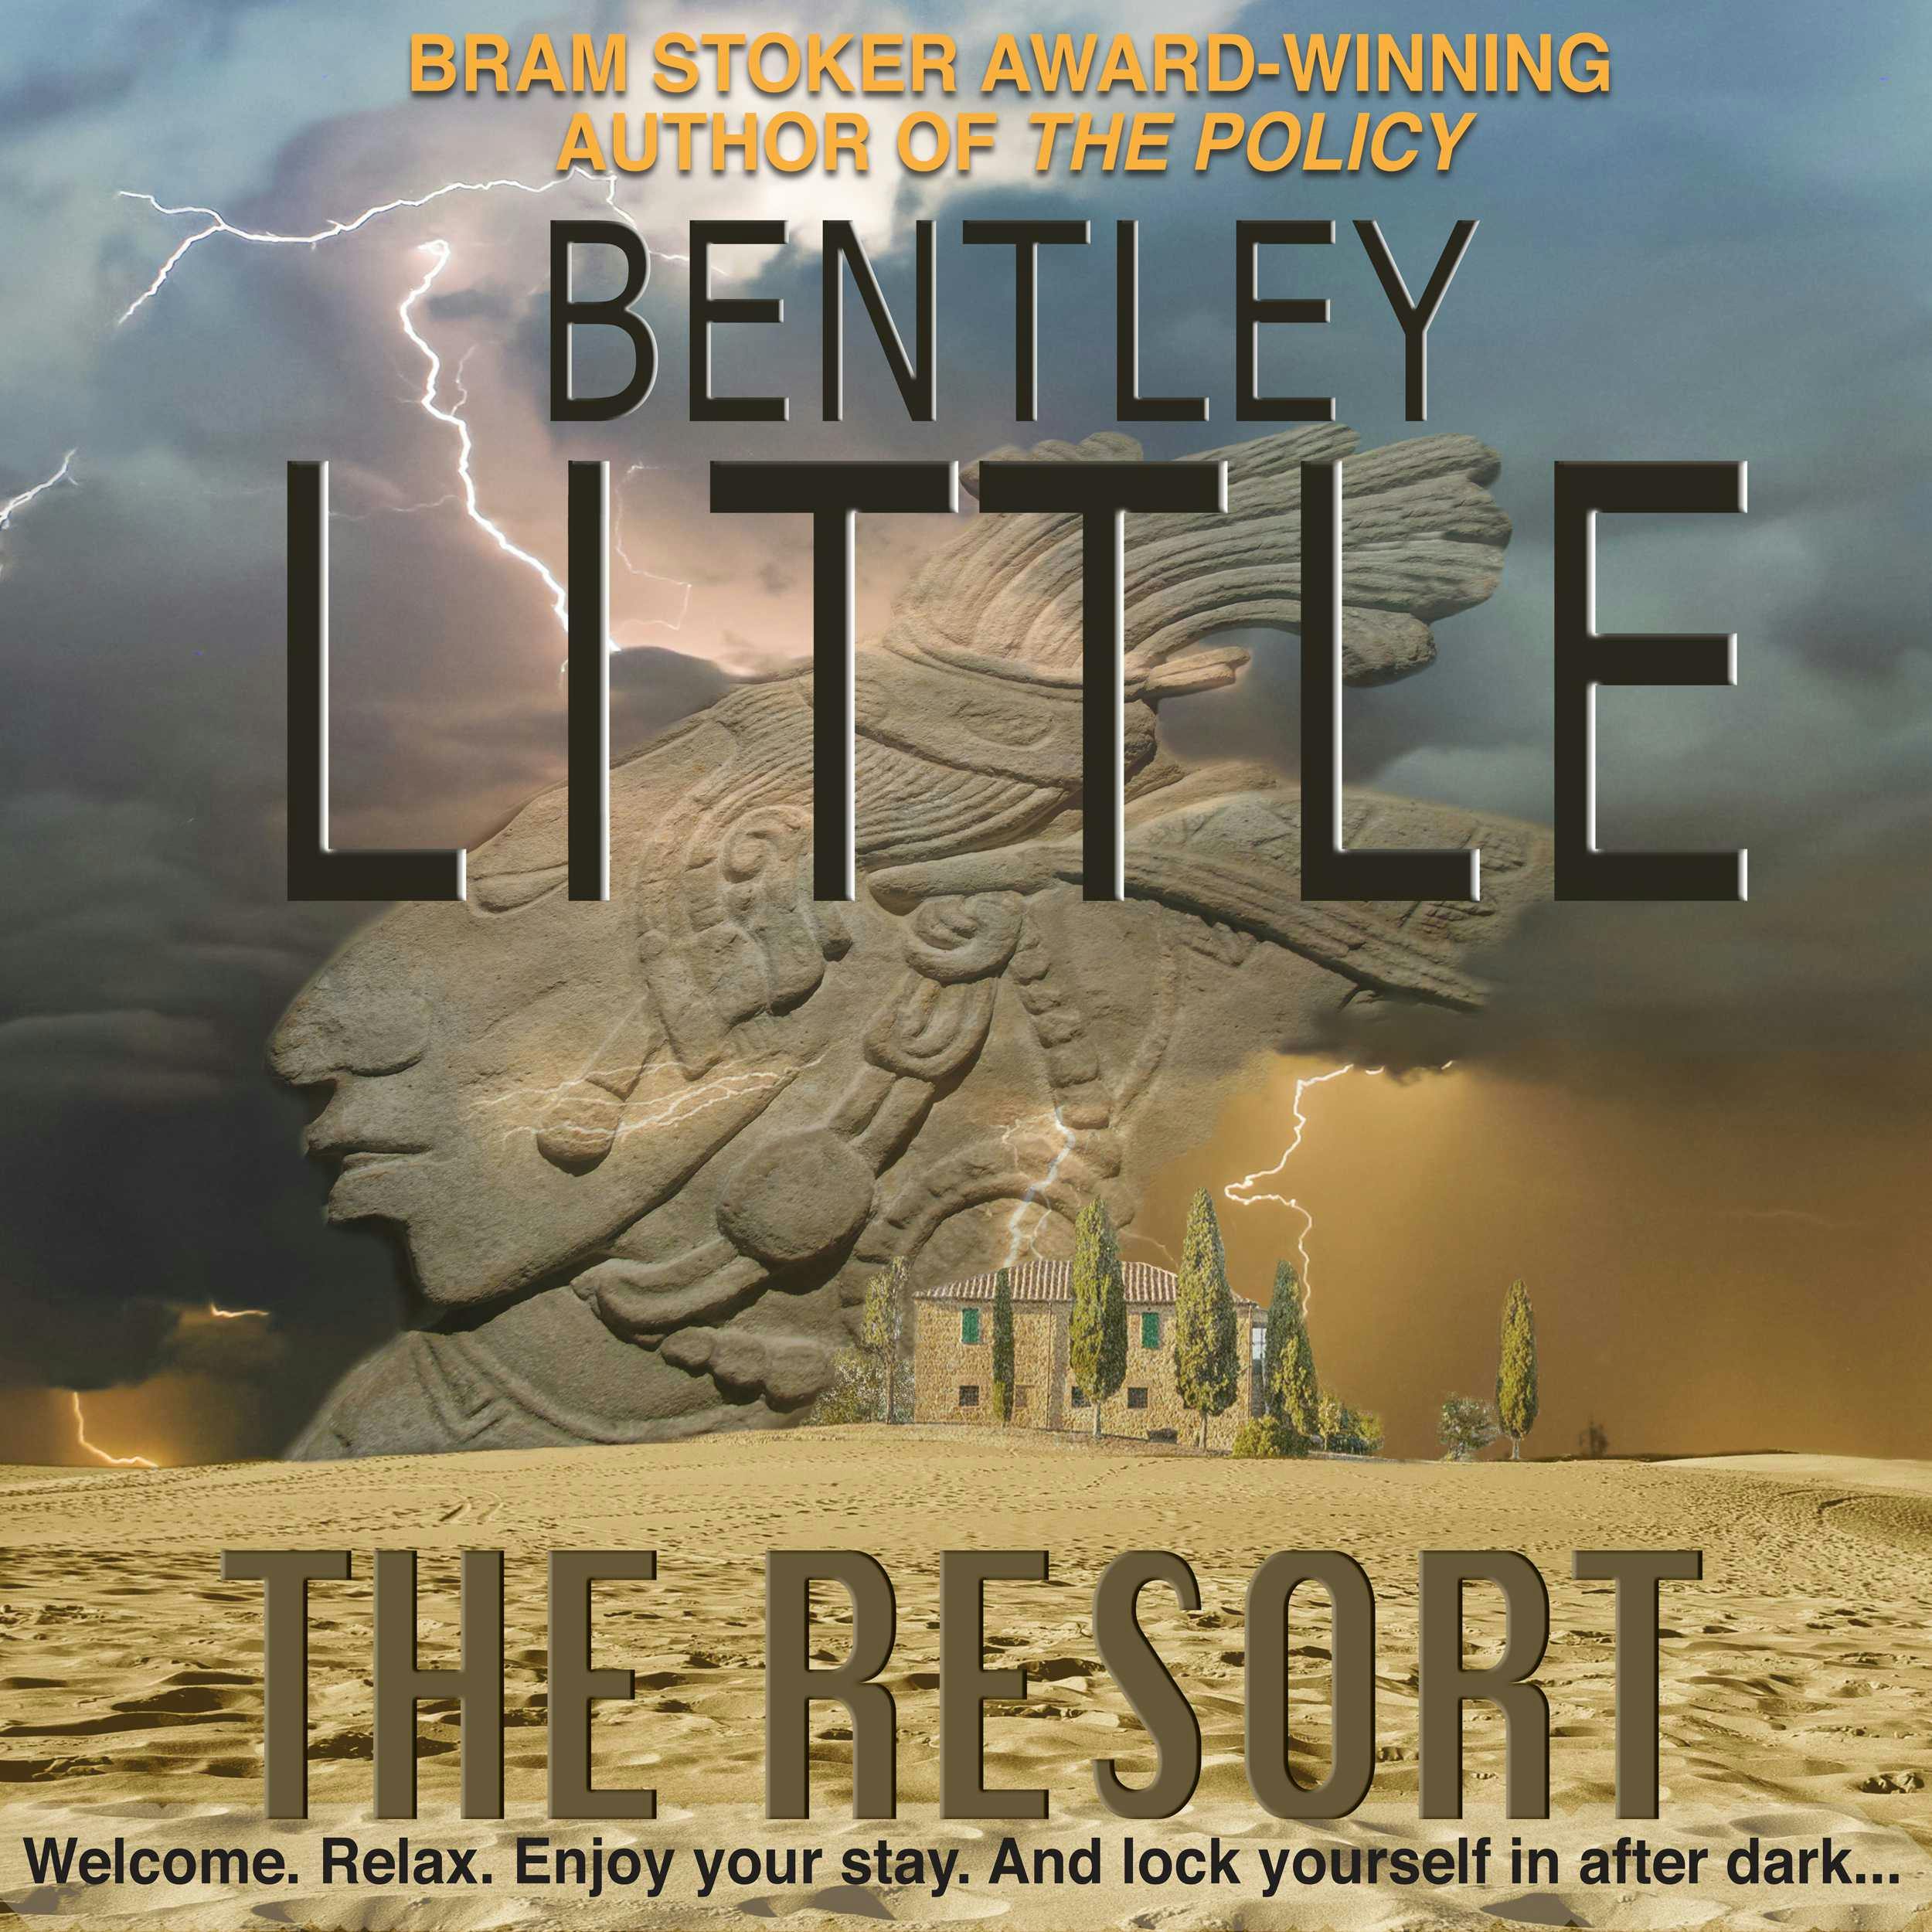 The Resort - Bentley Little